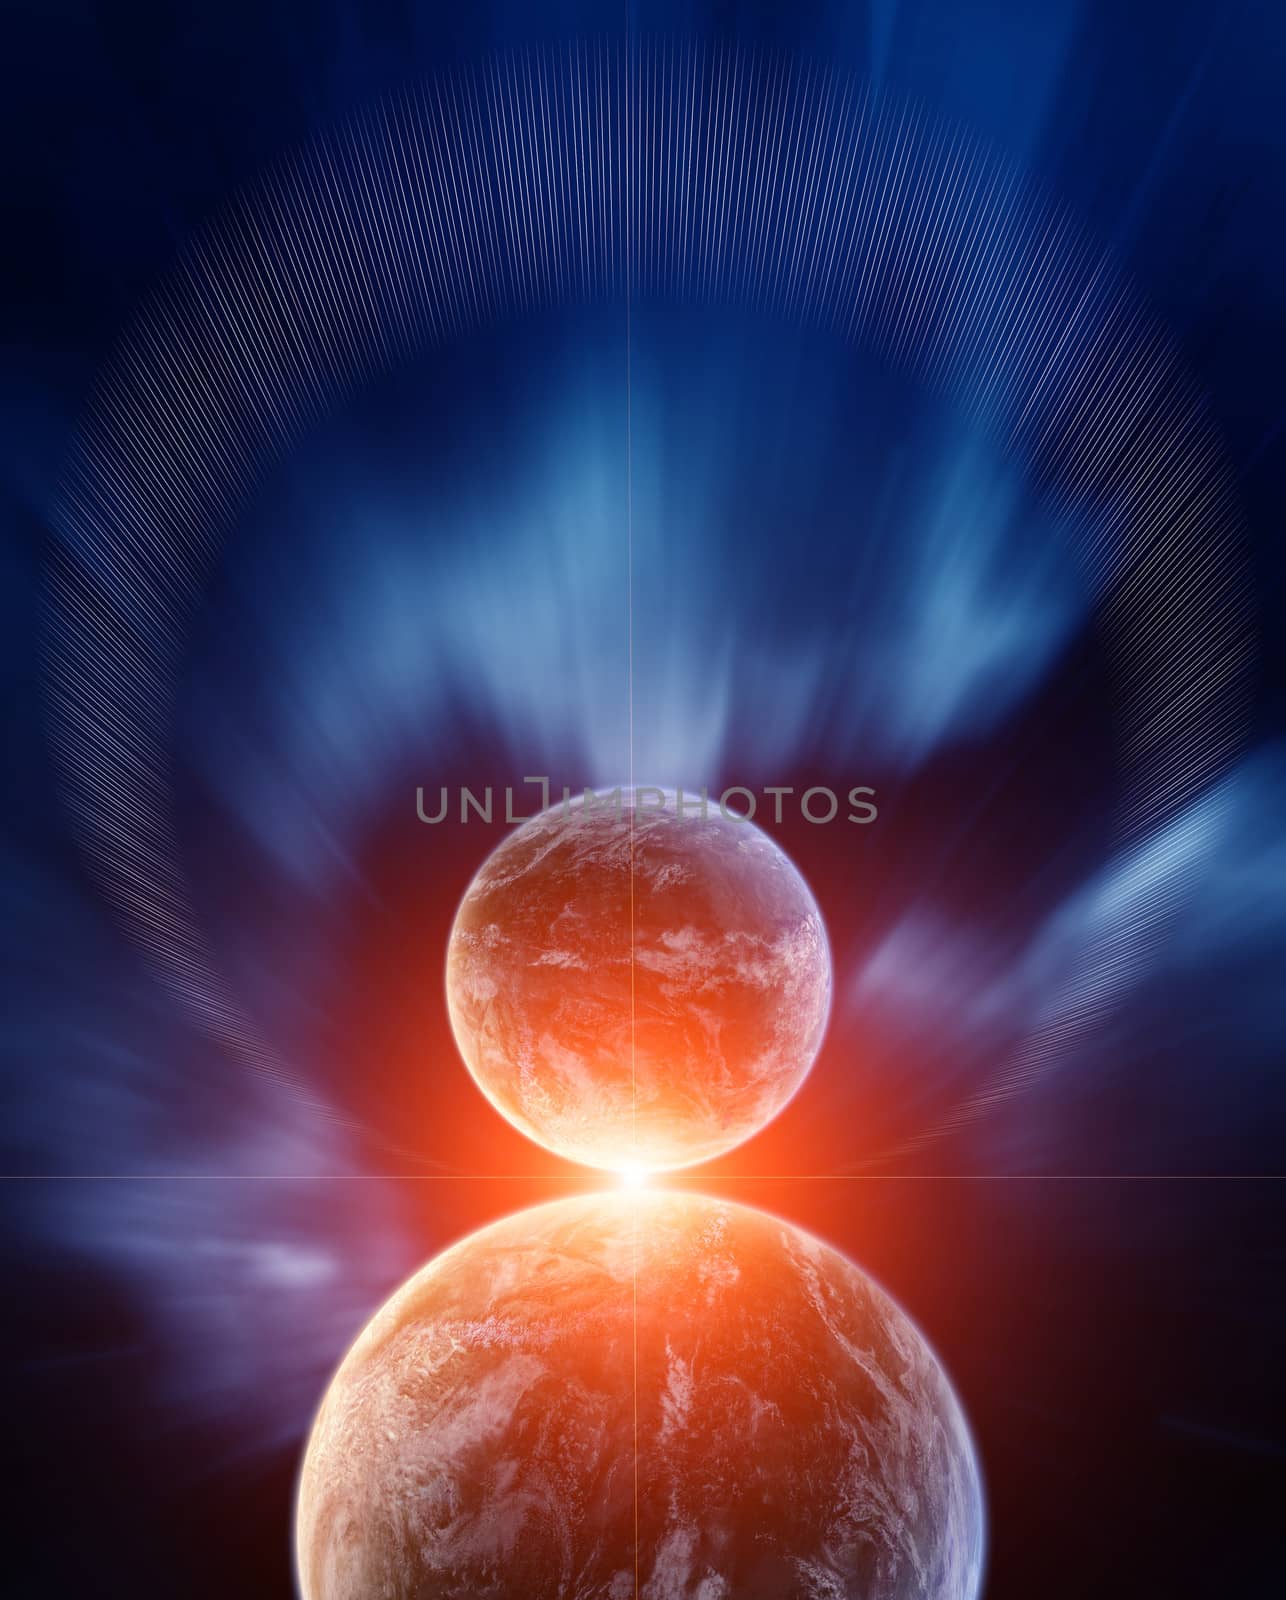 Planets with Sunrise and Background Nebula by EnricoAgostoni